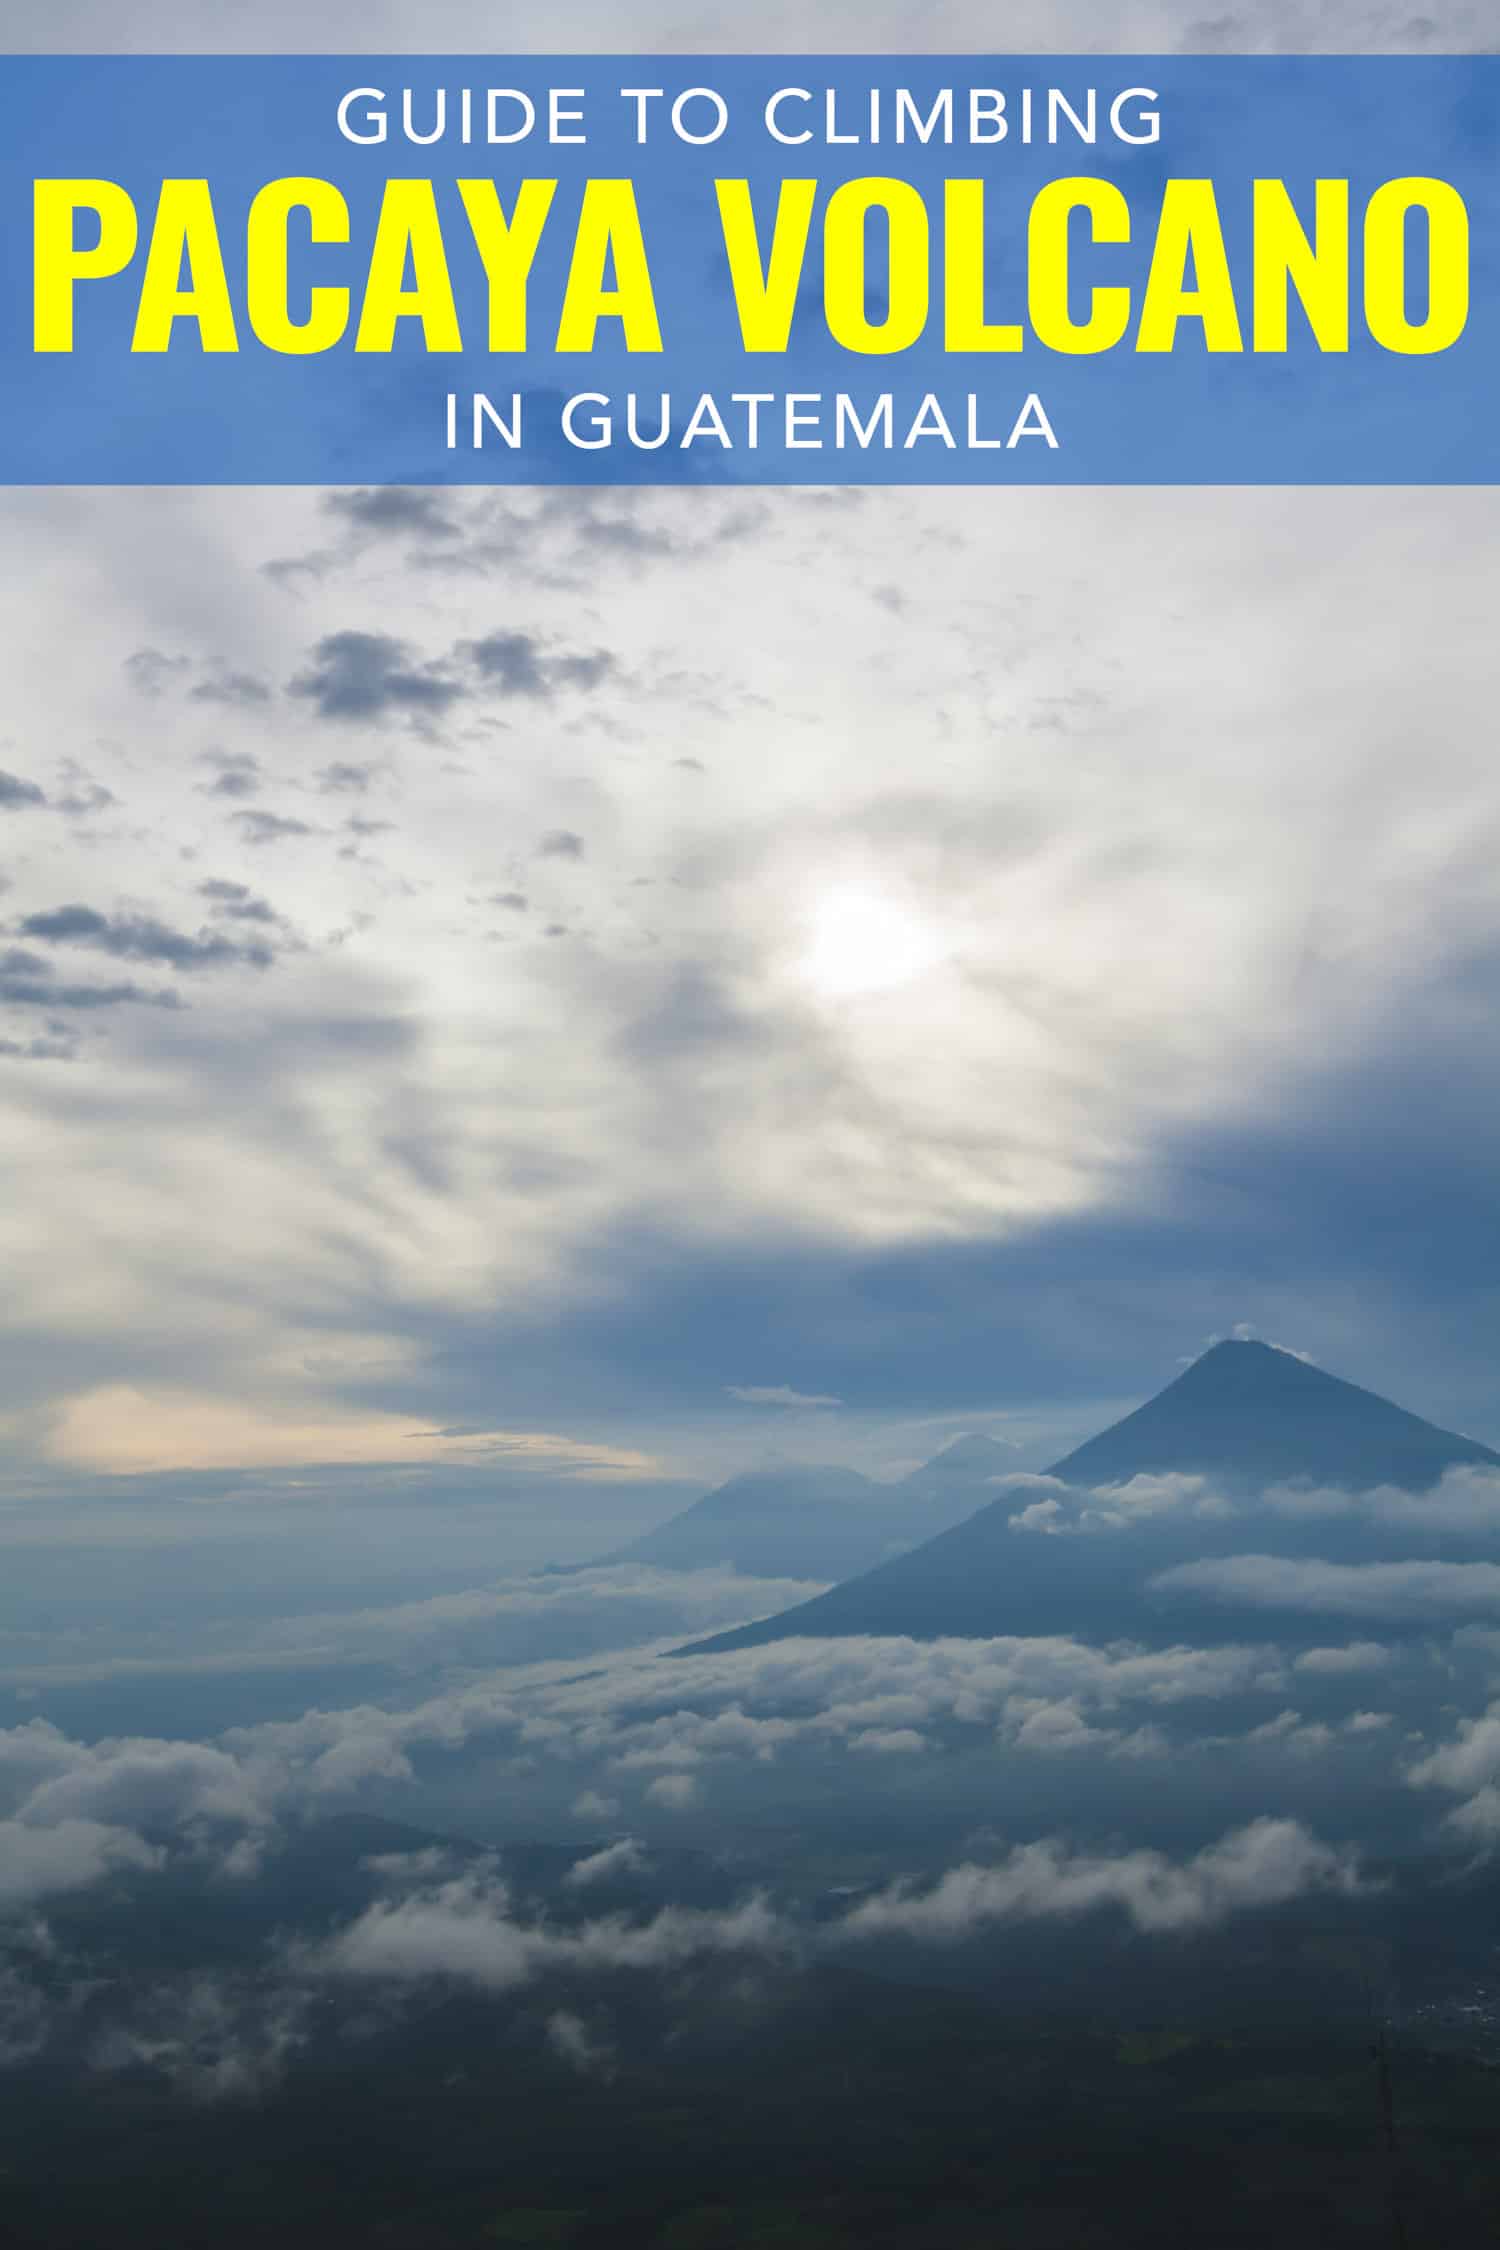 Pacaya volcano in Guatemala